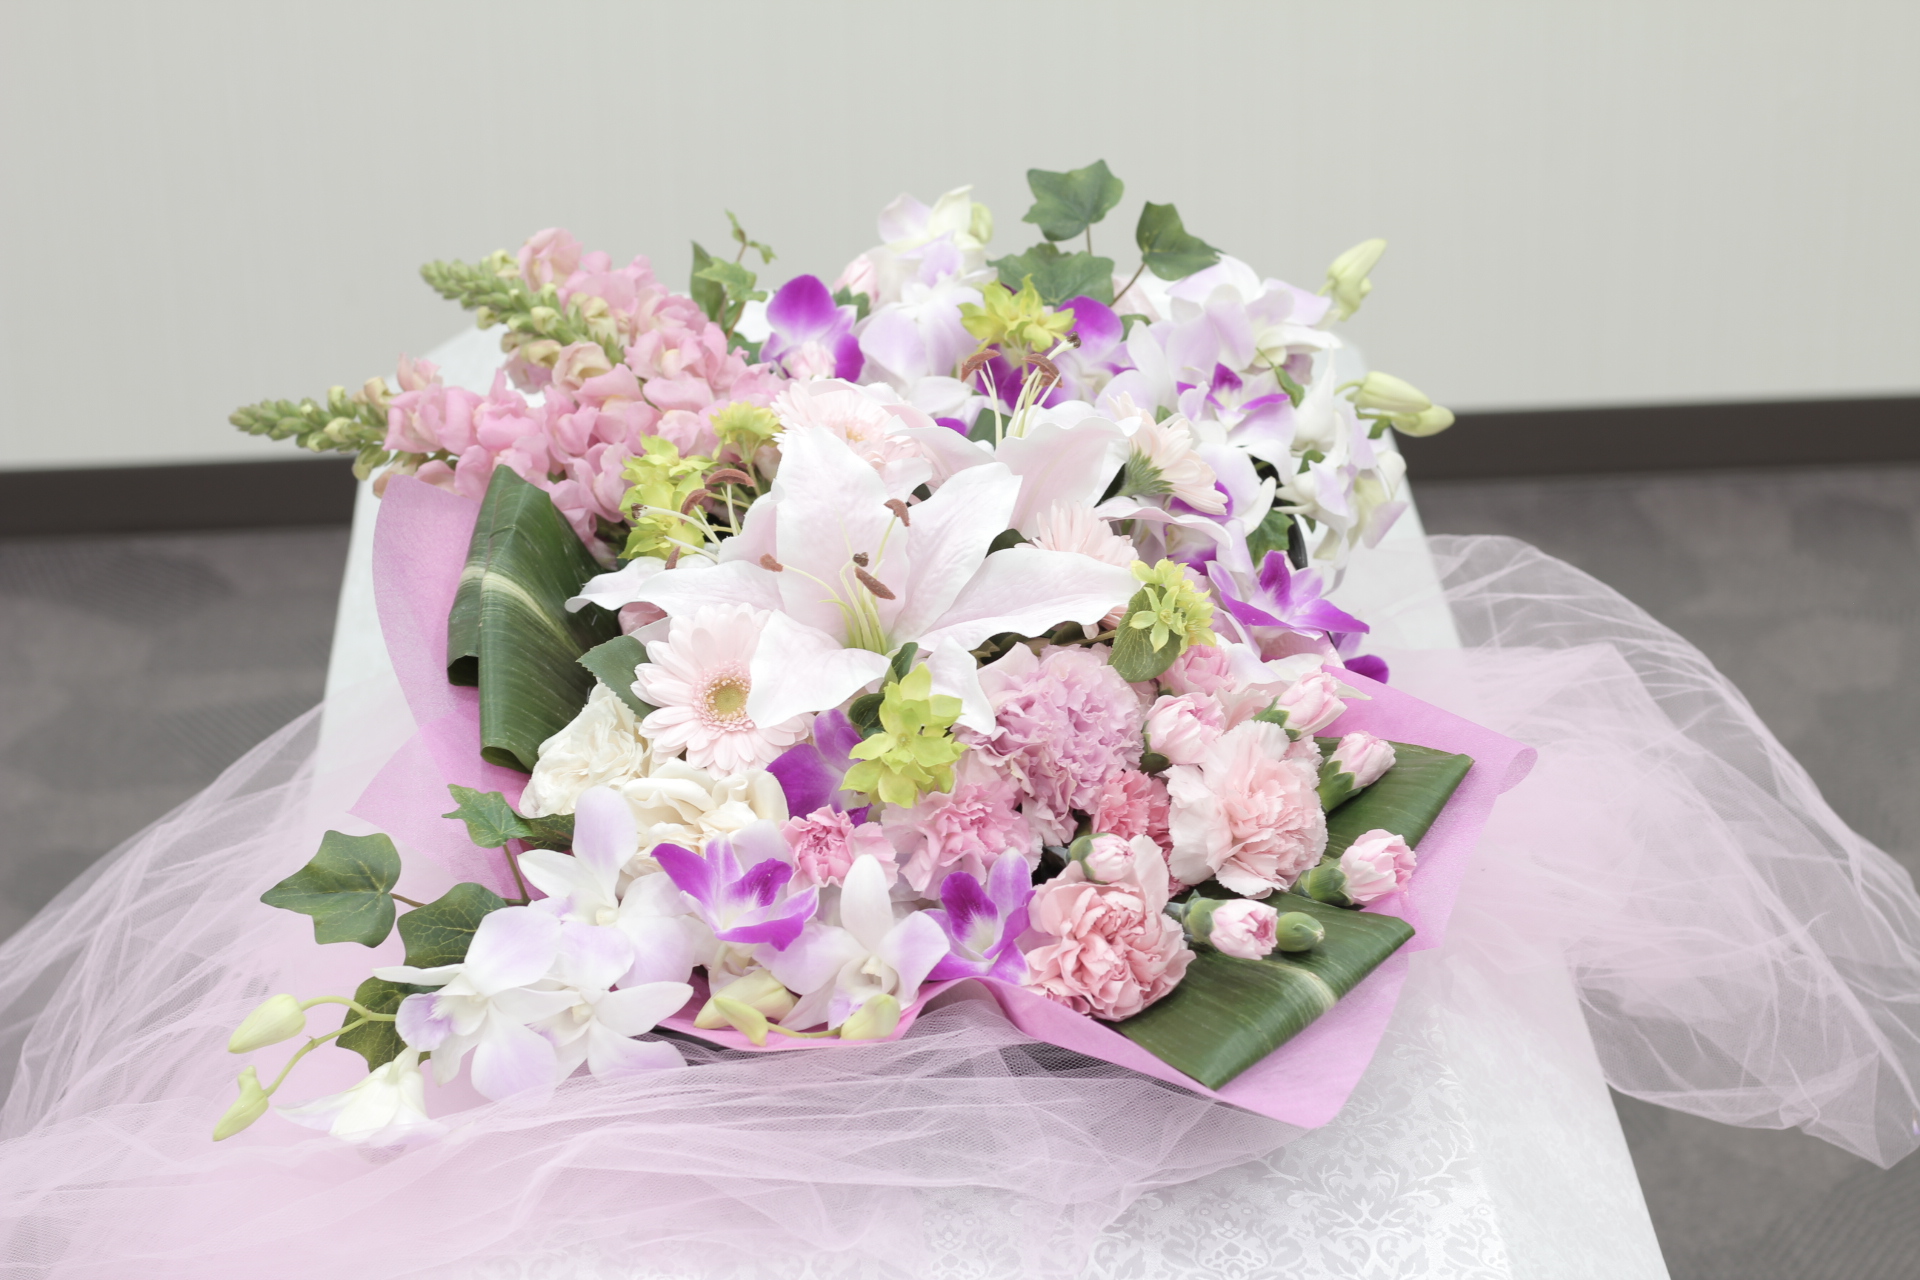 おてごろ葬 ピンク色のお別れの花束 おてごろ葬 福岡 大阪の直葬や火葬式などの格安葬儀